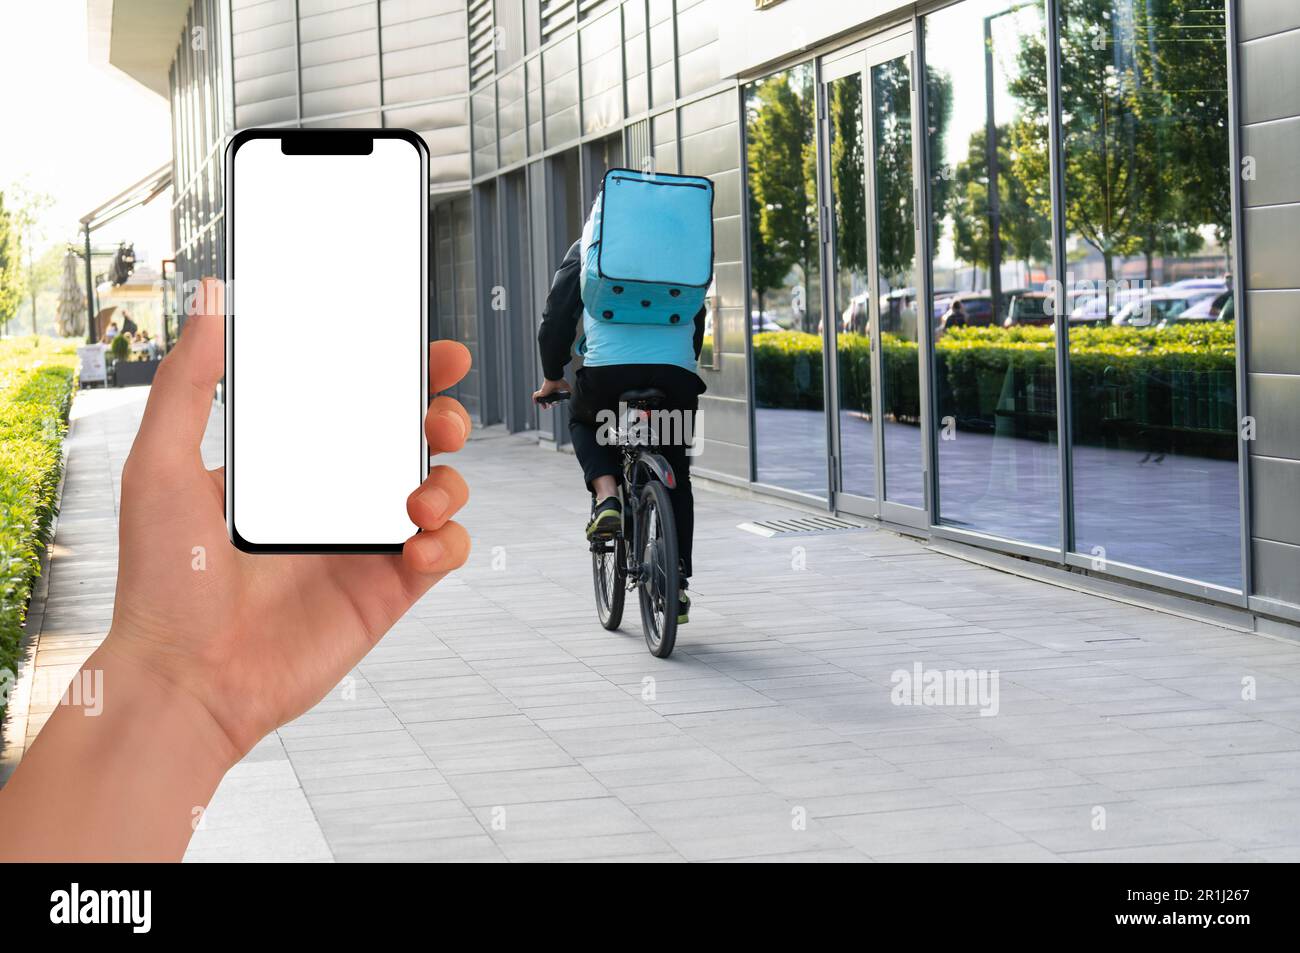 La main avec le téléphone sur un courrier de livraison de fond sur un vélo. Application mobile pour la livraison de nourriture. Photo de haute qualité Banque D'Images